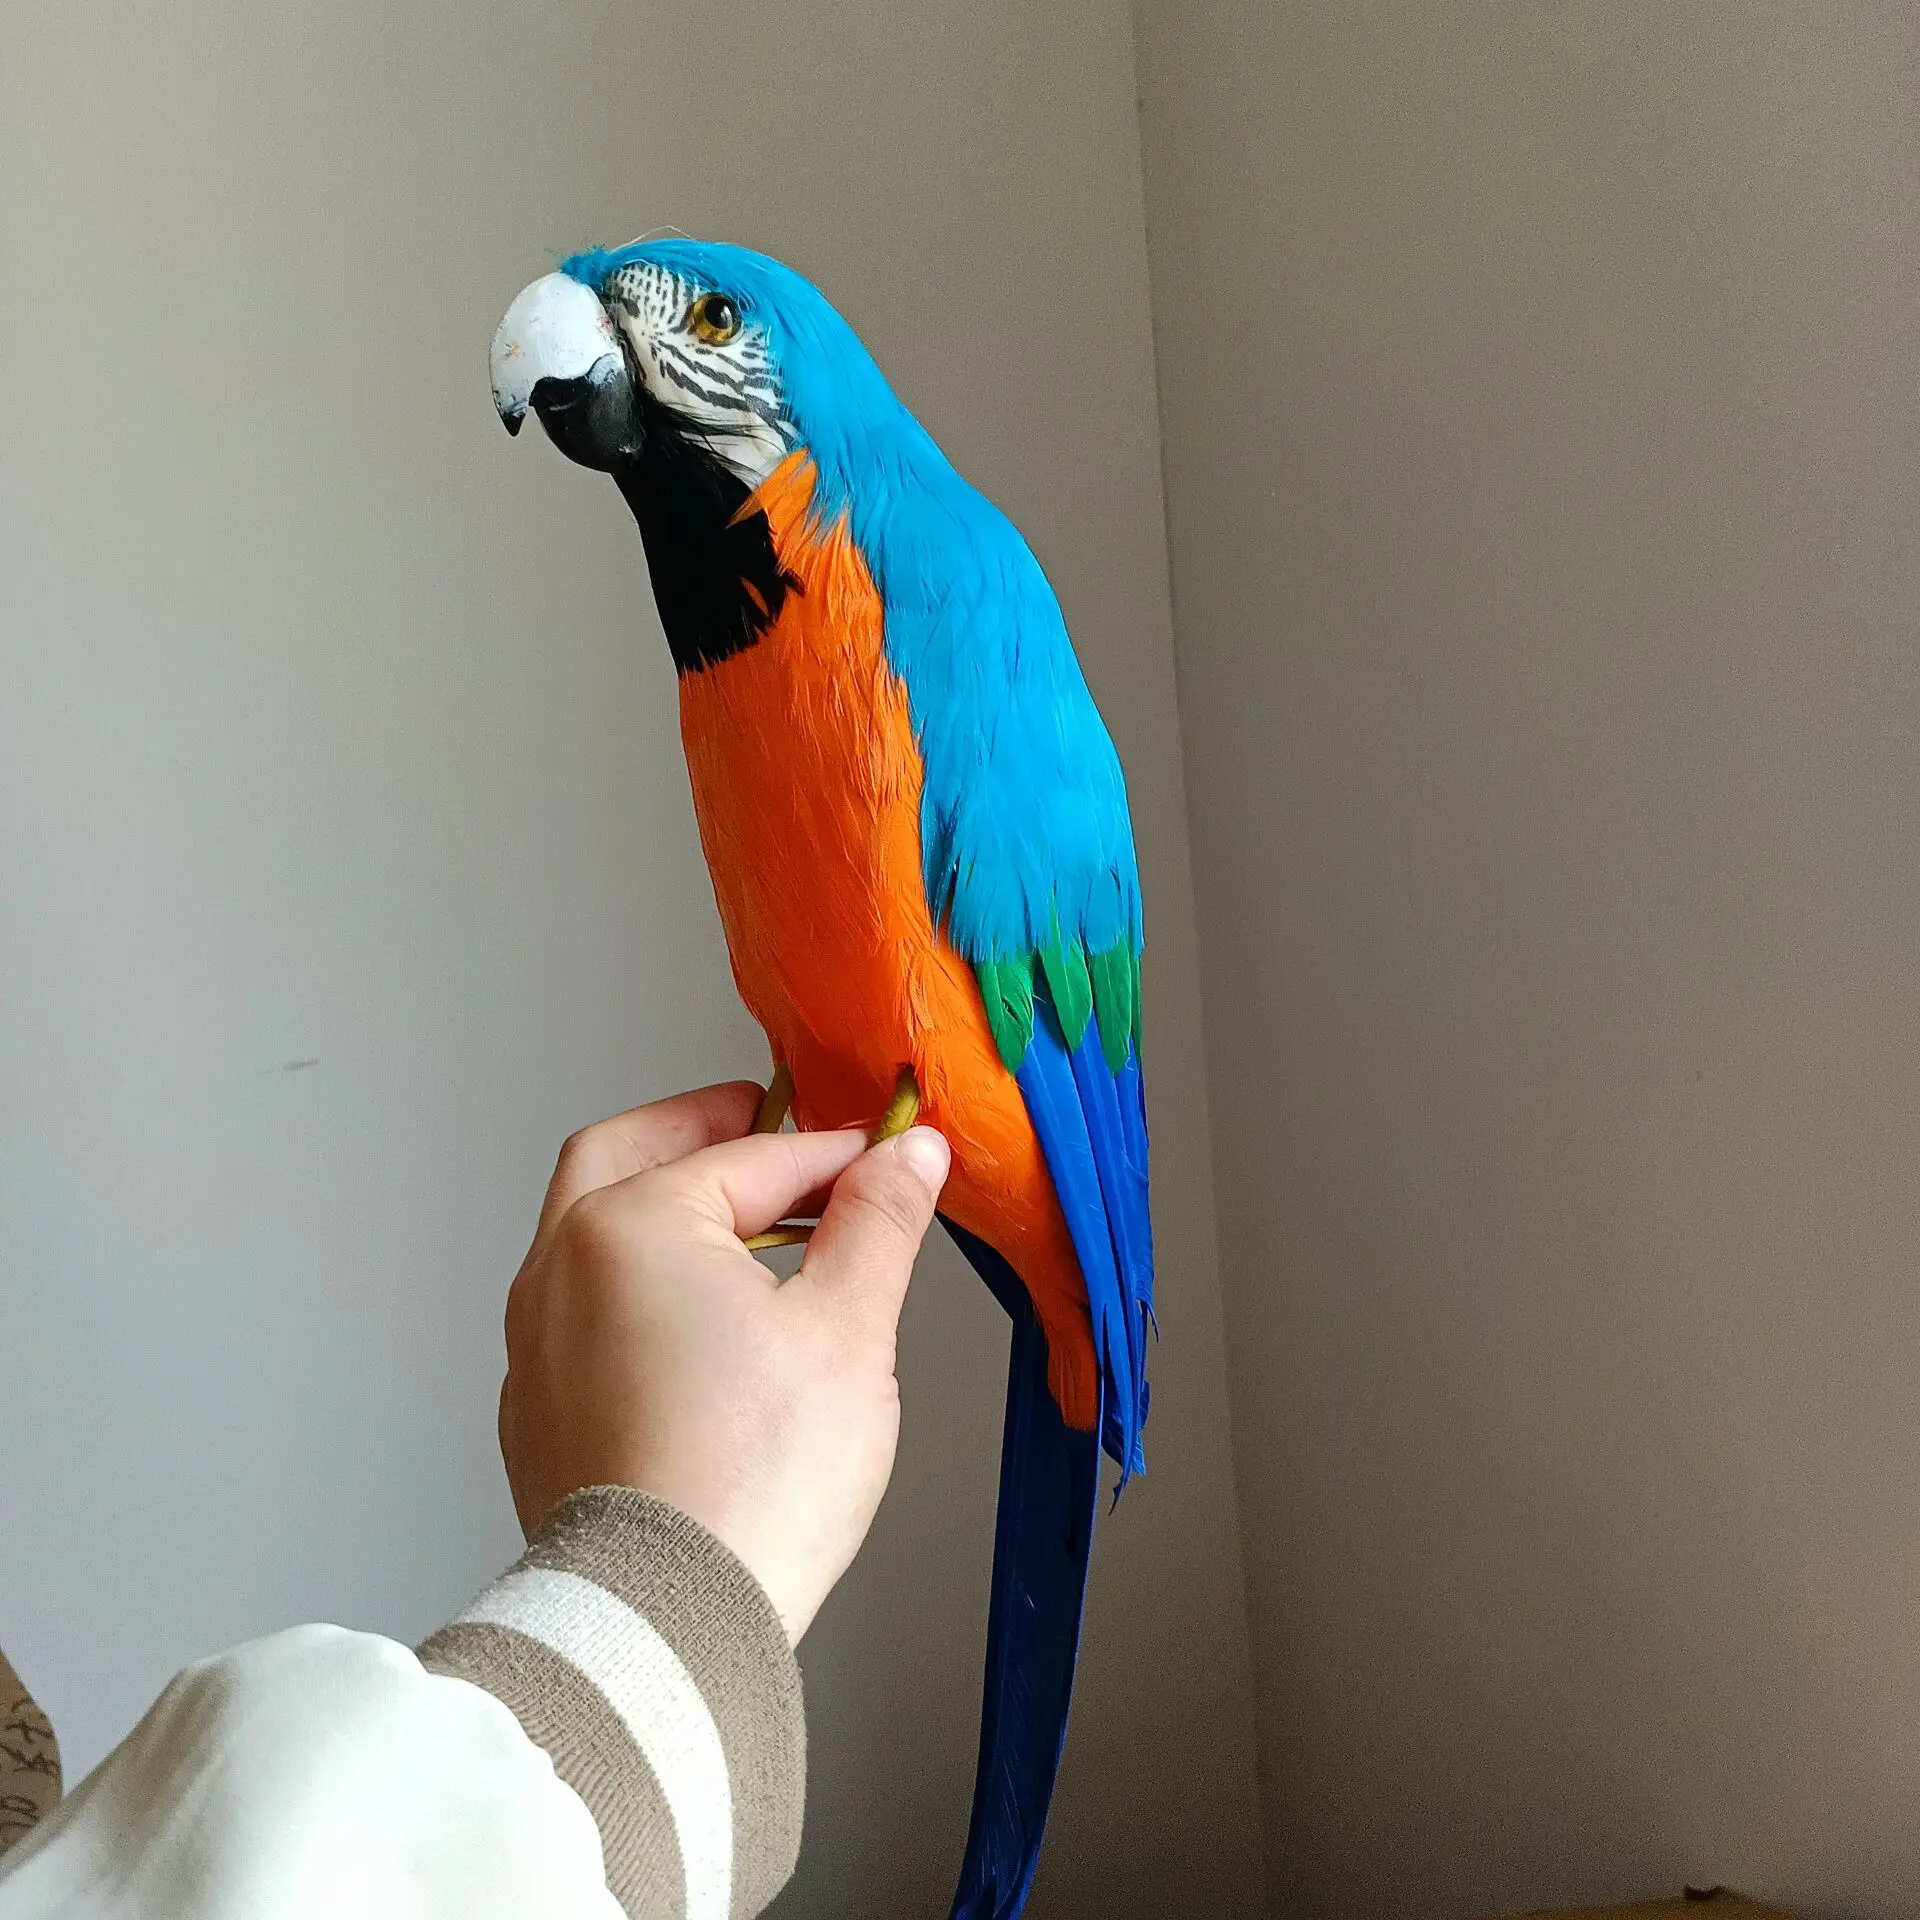 espuma-azul-e-penas-papagaio-modelo-bonito-simulacao-brinquedo-presente-42cm-h2728